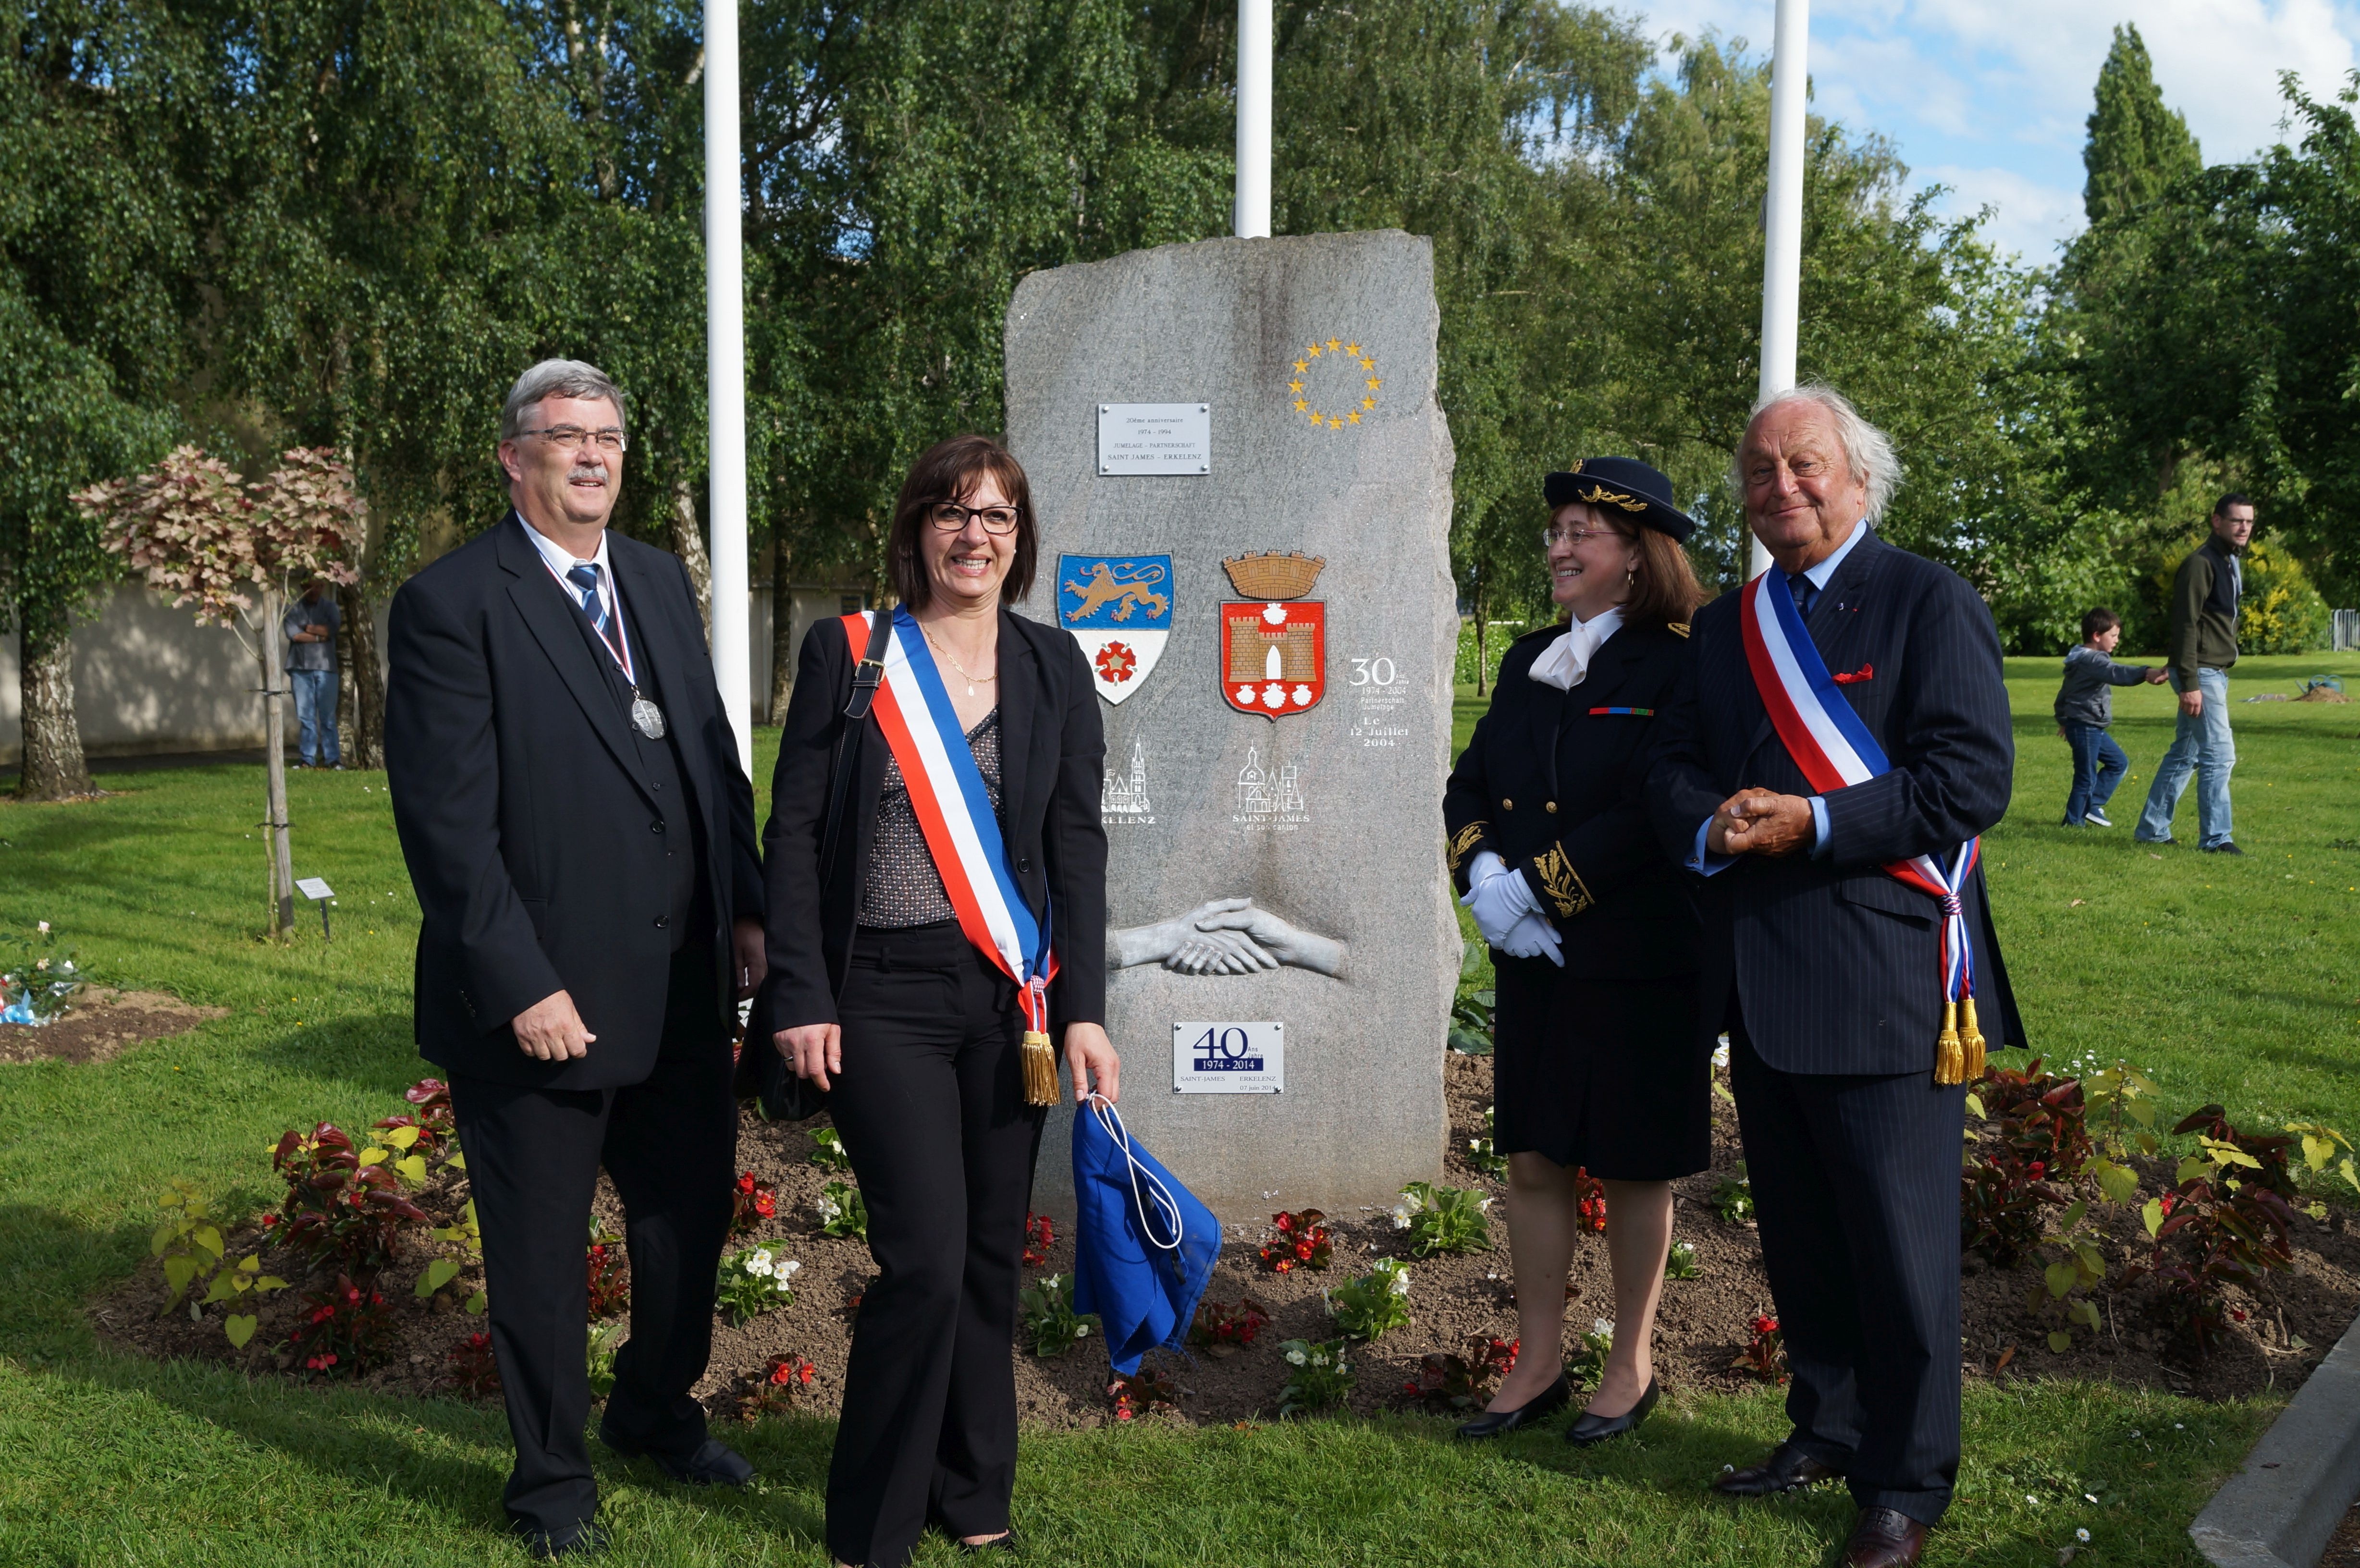 Bürgermeister Peter Jansen steht mit offiziellen VertreterInnen der Partnerstadt Saint-James am dortigen Gedenkstein der Partnerschaft zwischen Erkelenz und Saint-James.